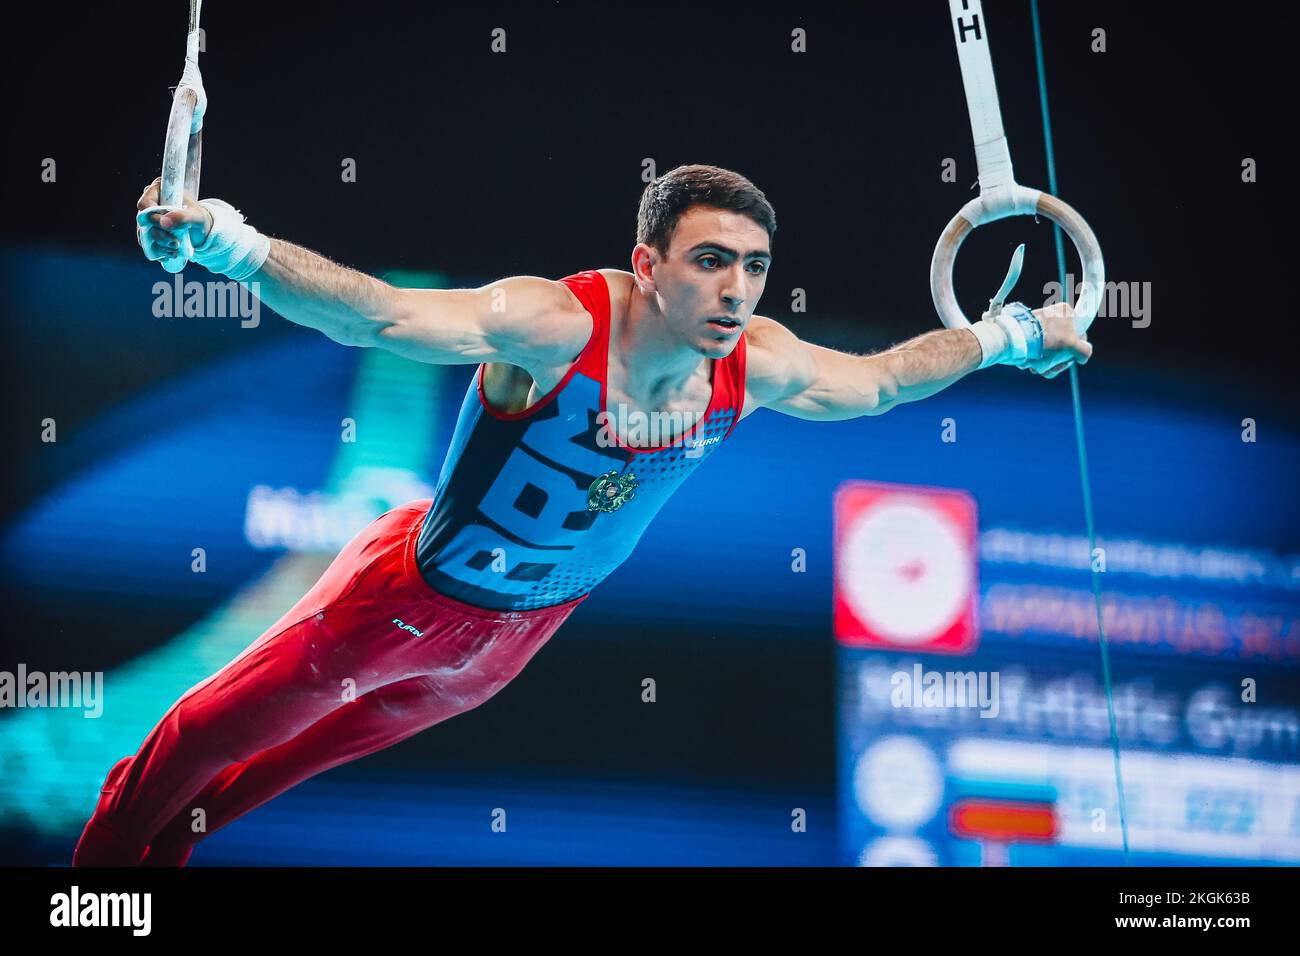 Szczecin, Polonia, 10 de abril de 2019: Tovmasyan Artur compite en los anillos durante los campeonatos europeos de gimnasia artística Foto de stock